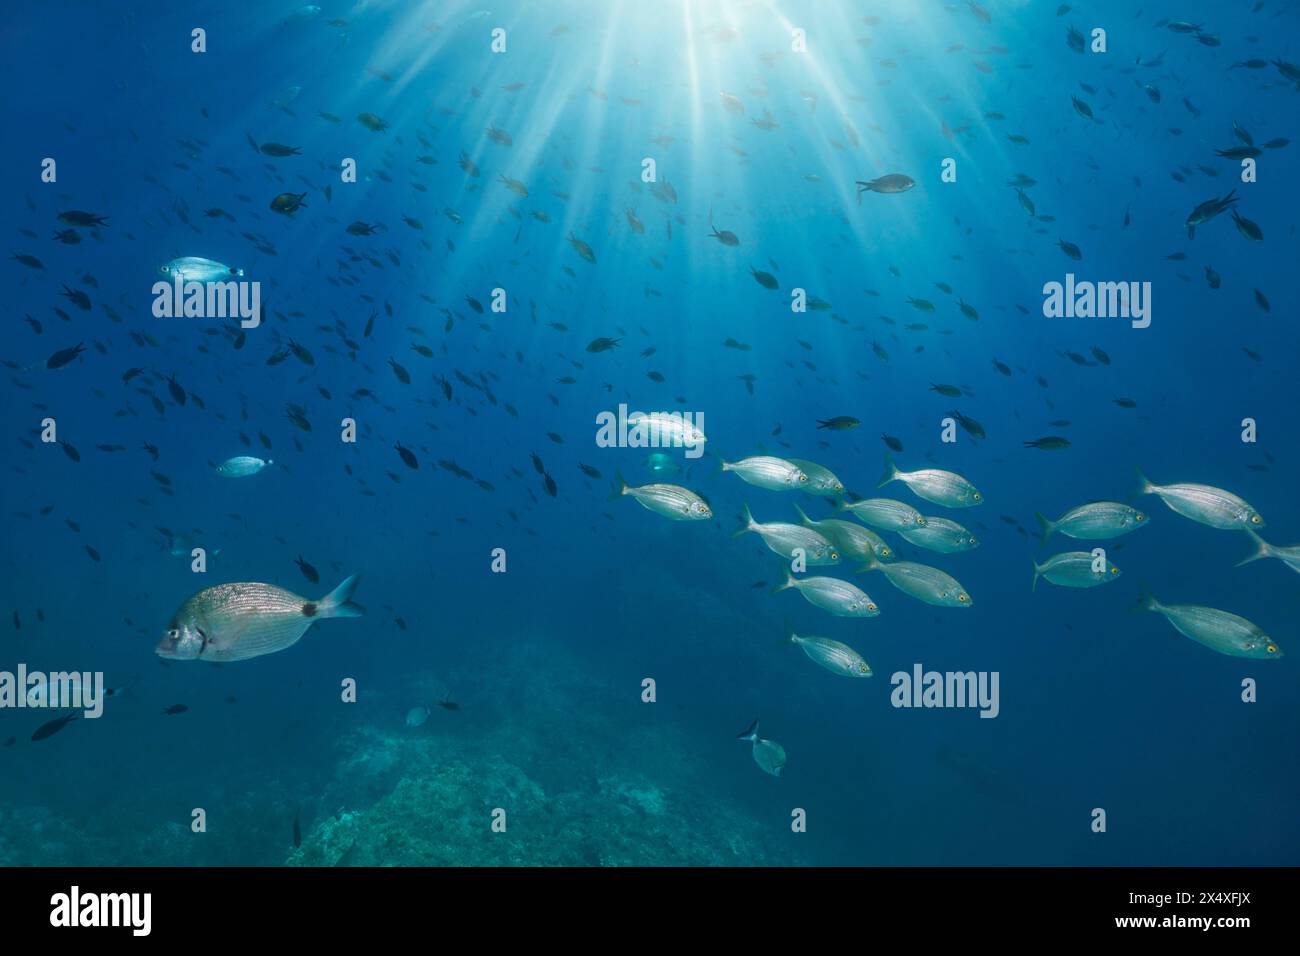 Banc de poissons avec la lumière du soleil sous l'eau dans l'eau bleue de la mer Méditerranée (dorade et damoiselle), Espagne, Catalogne, Cap de Creus Banque D'Images